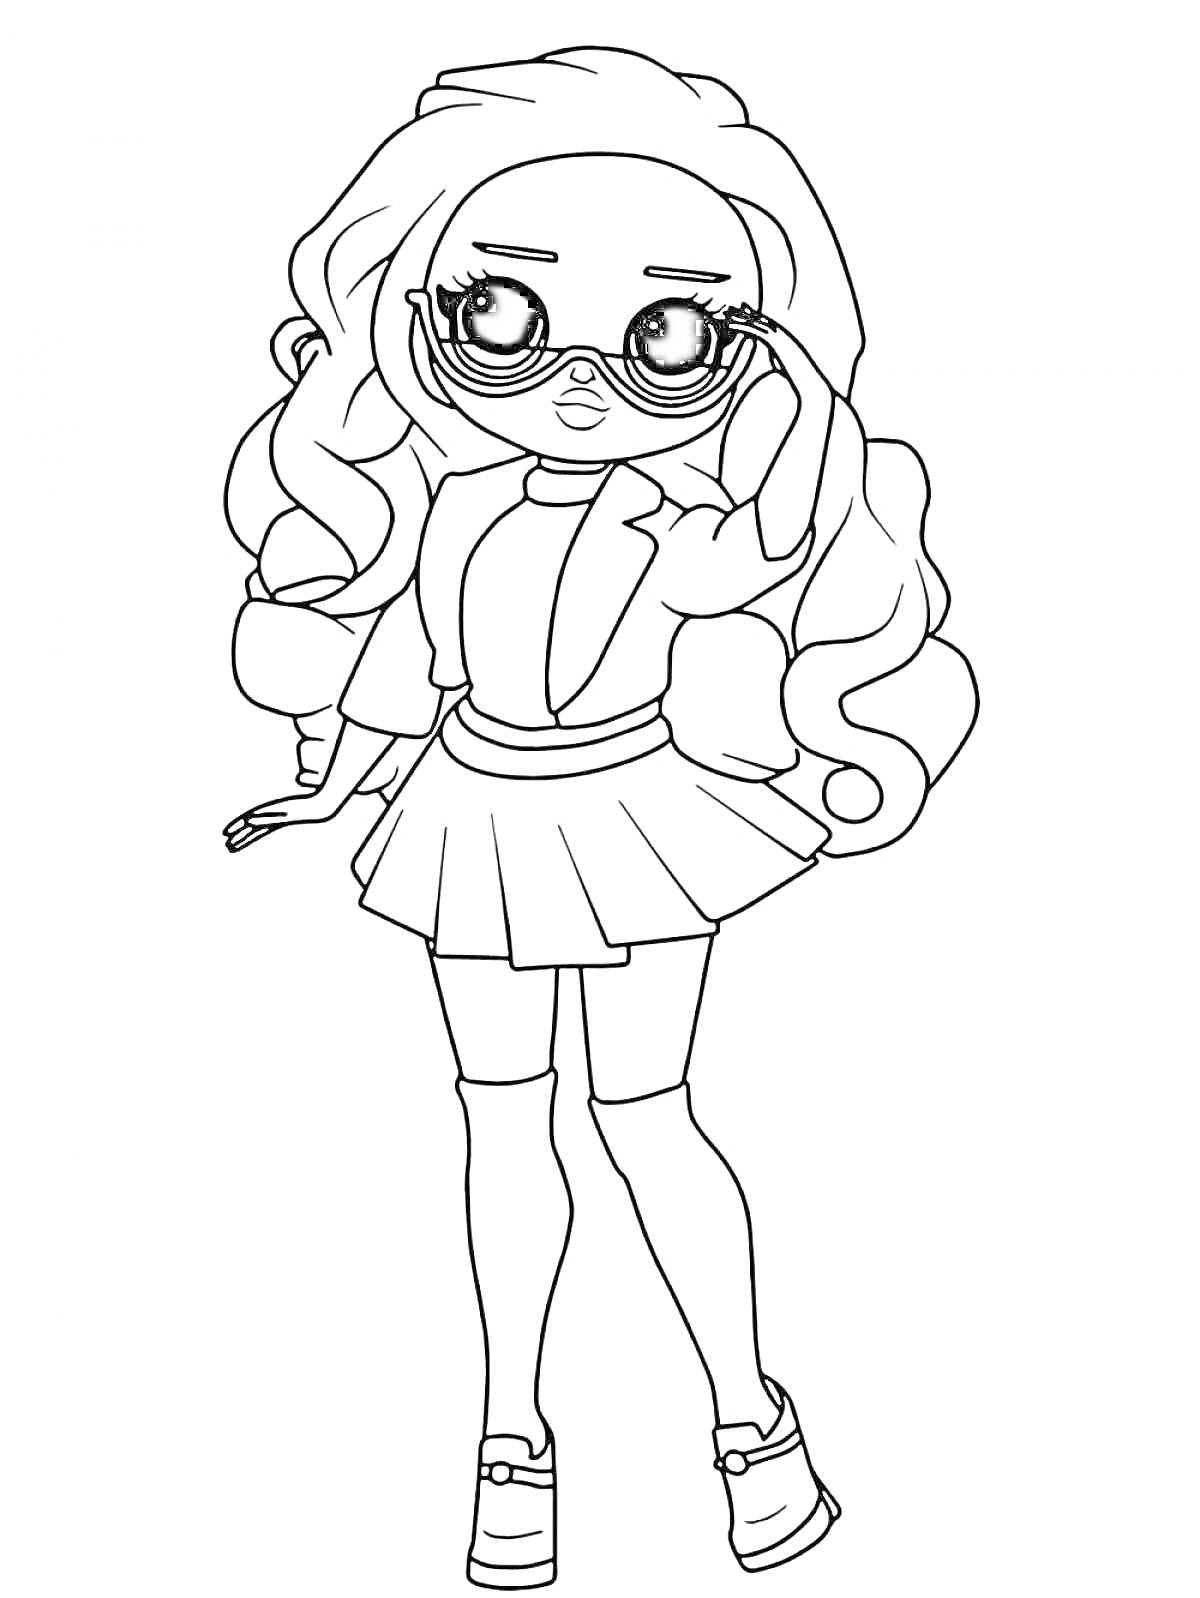 Раскраска Кукла ЛОЛ в солнцезащитных очках с длинными волосами, пиджаком и юбкой